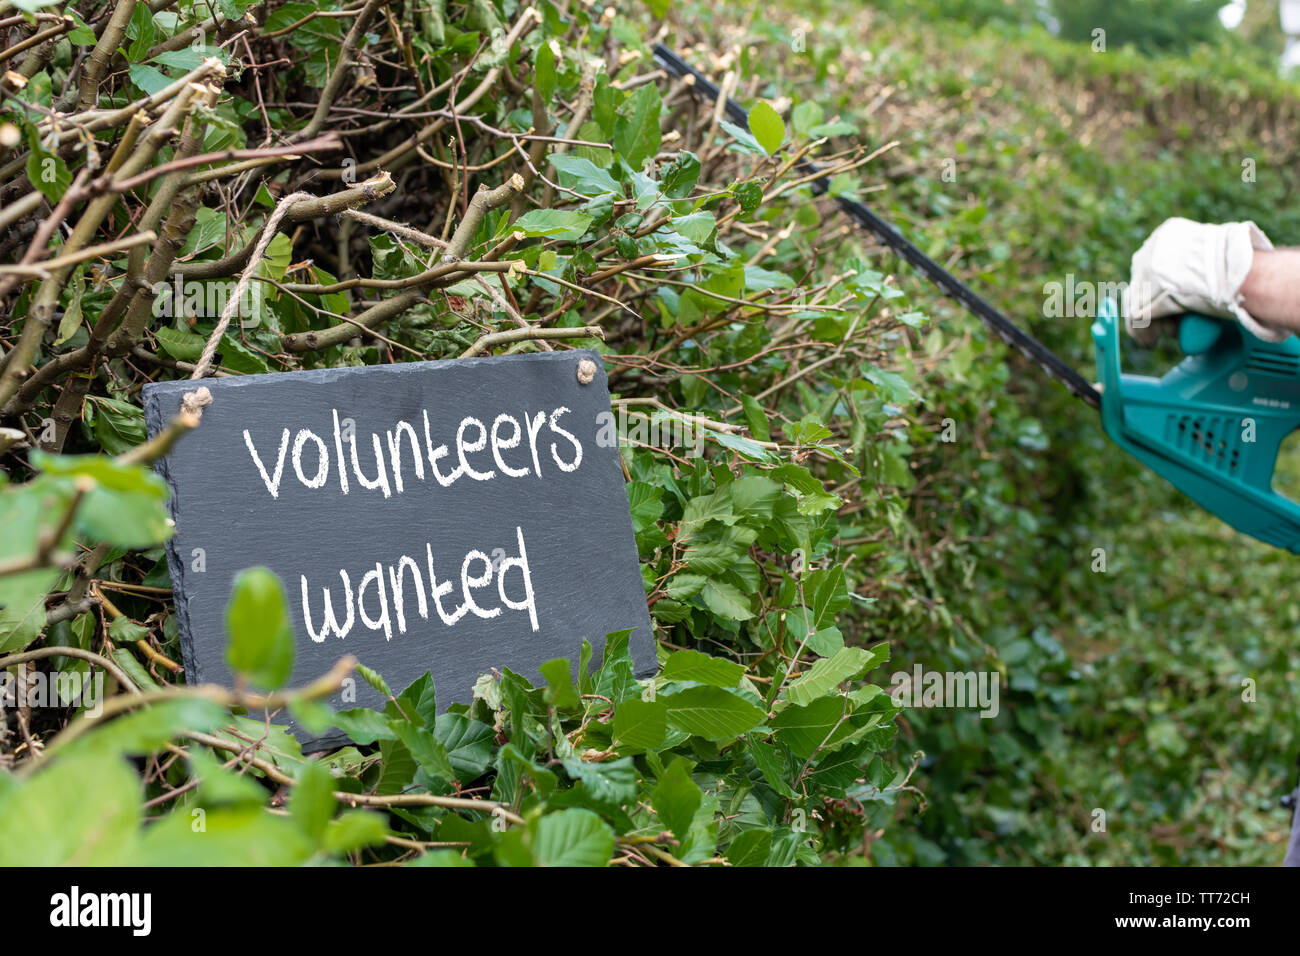 Volunteers needed for garden work. The sentence 'volunteers needed' is written on a slate. Stock Photo